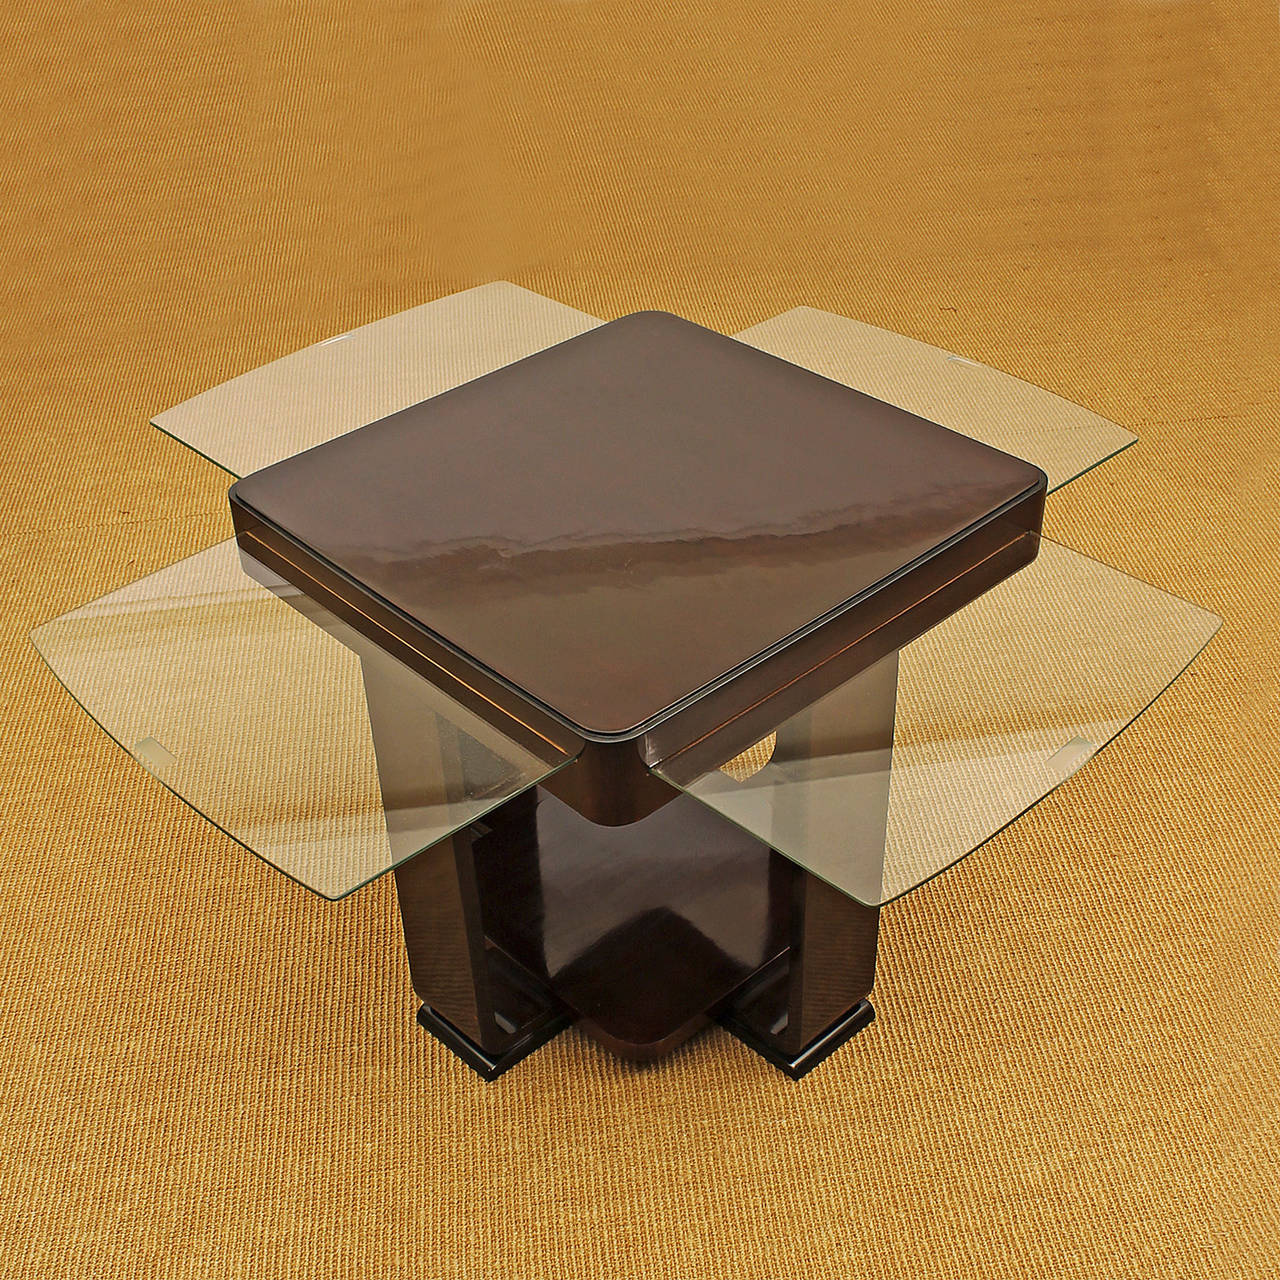 Quadratischer Beistelltisch im Art Deco-Stil, gebeiztes Mahagoni, 4 kleine Glasschiebeplatten.
Belgien 1930 - 35

Die Bretter sind maximal 26 cm geöffnet.